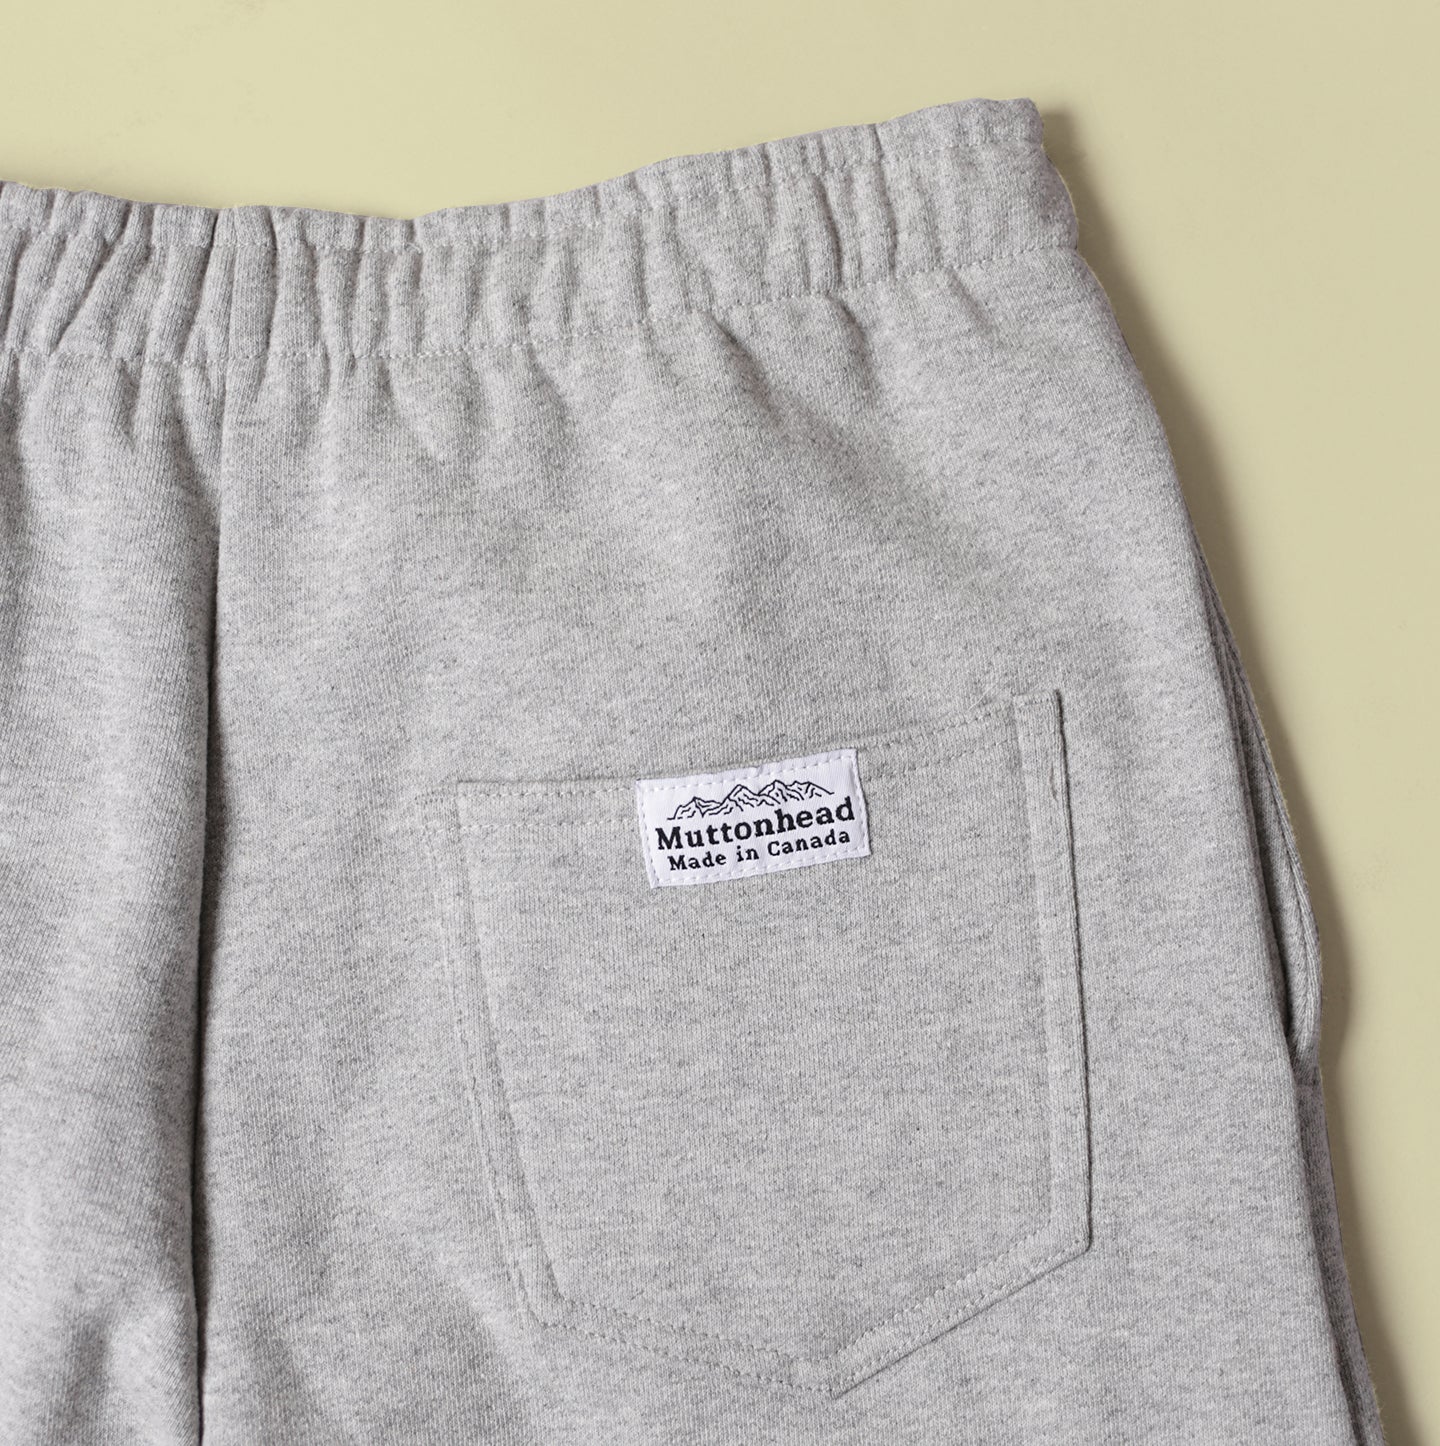 Sweatpants - Classic Grey